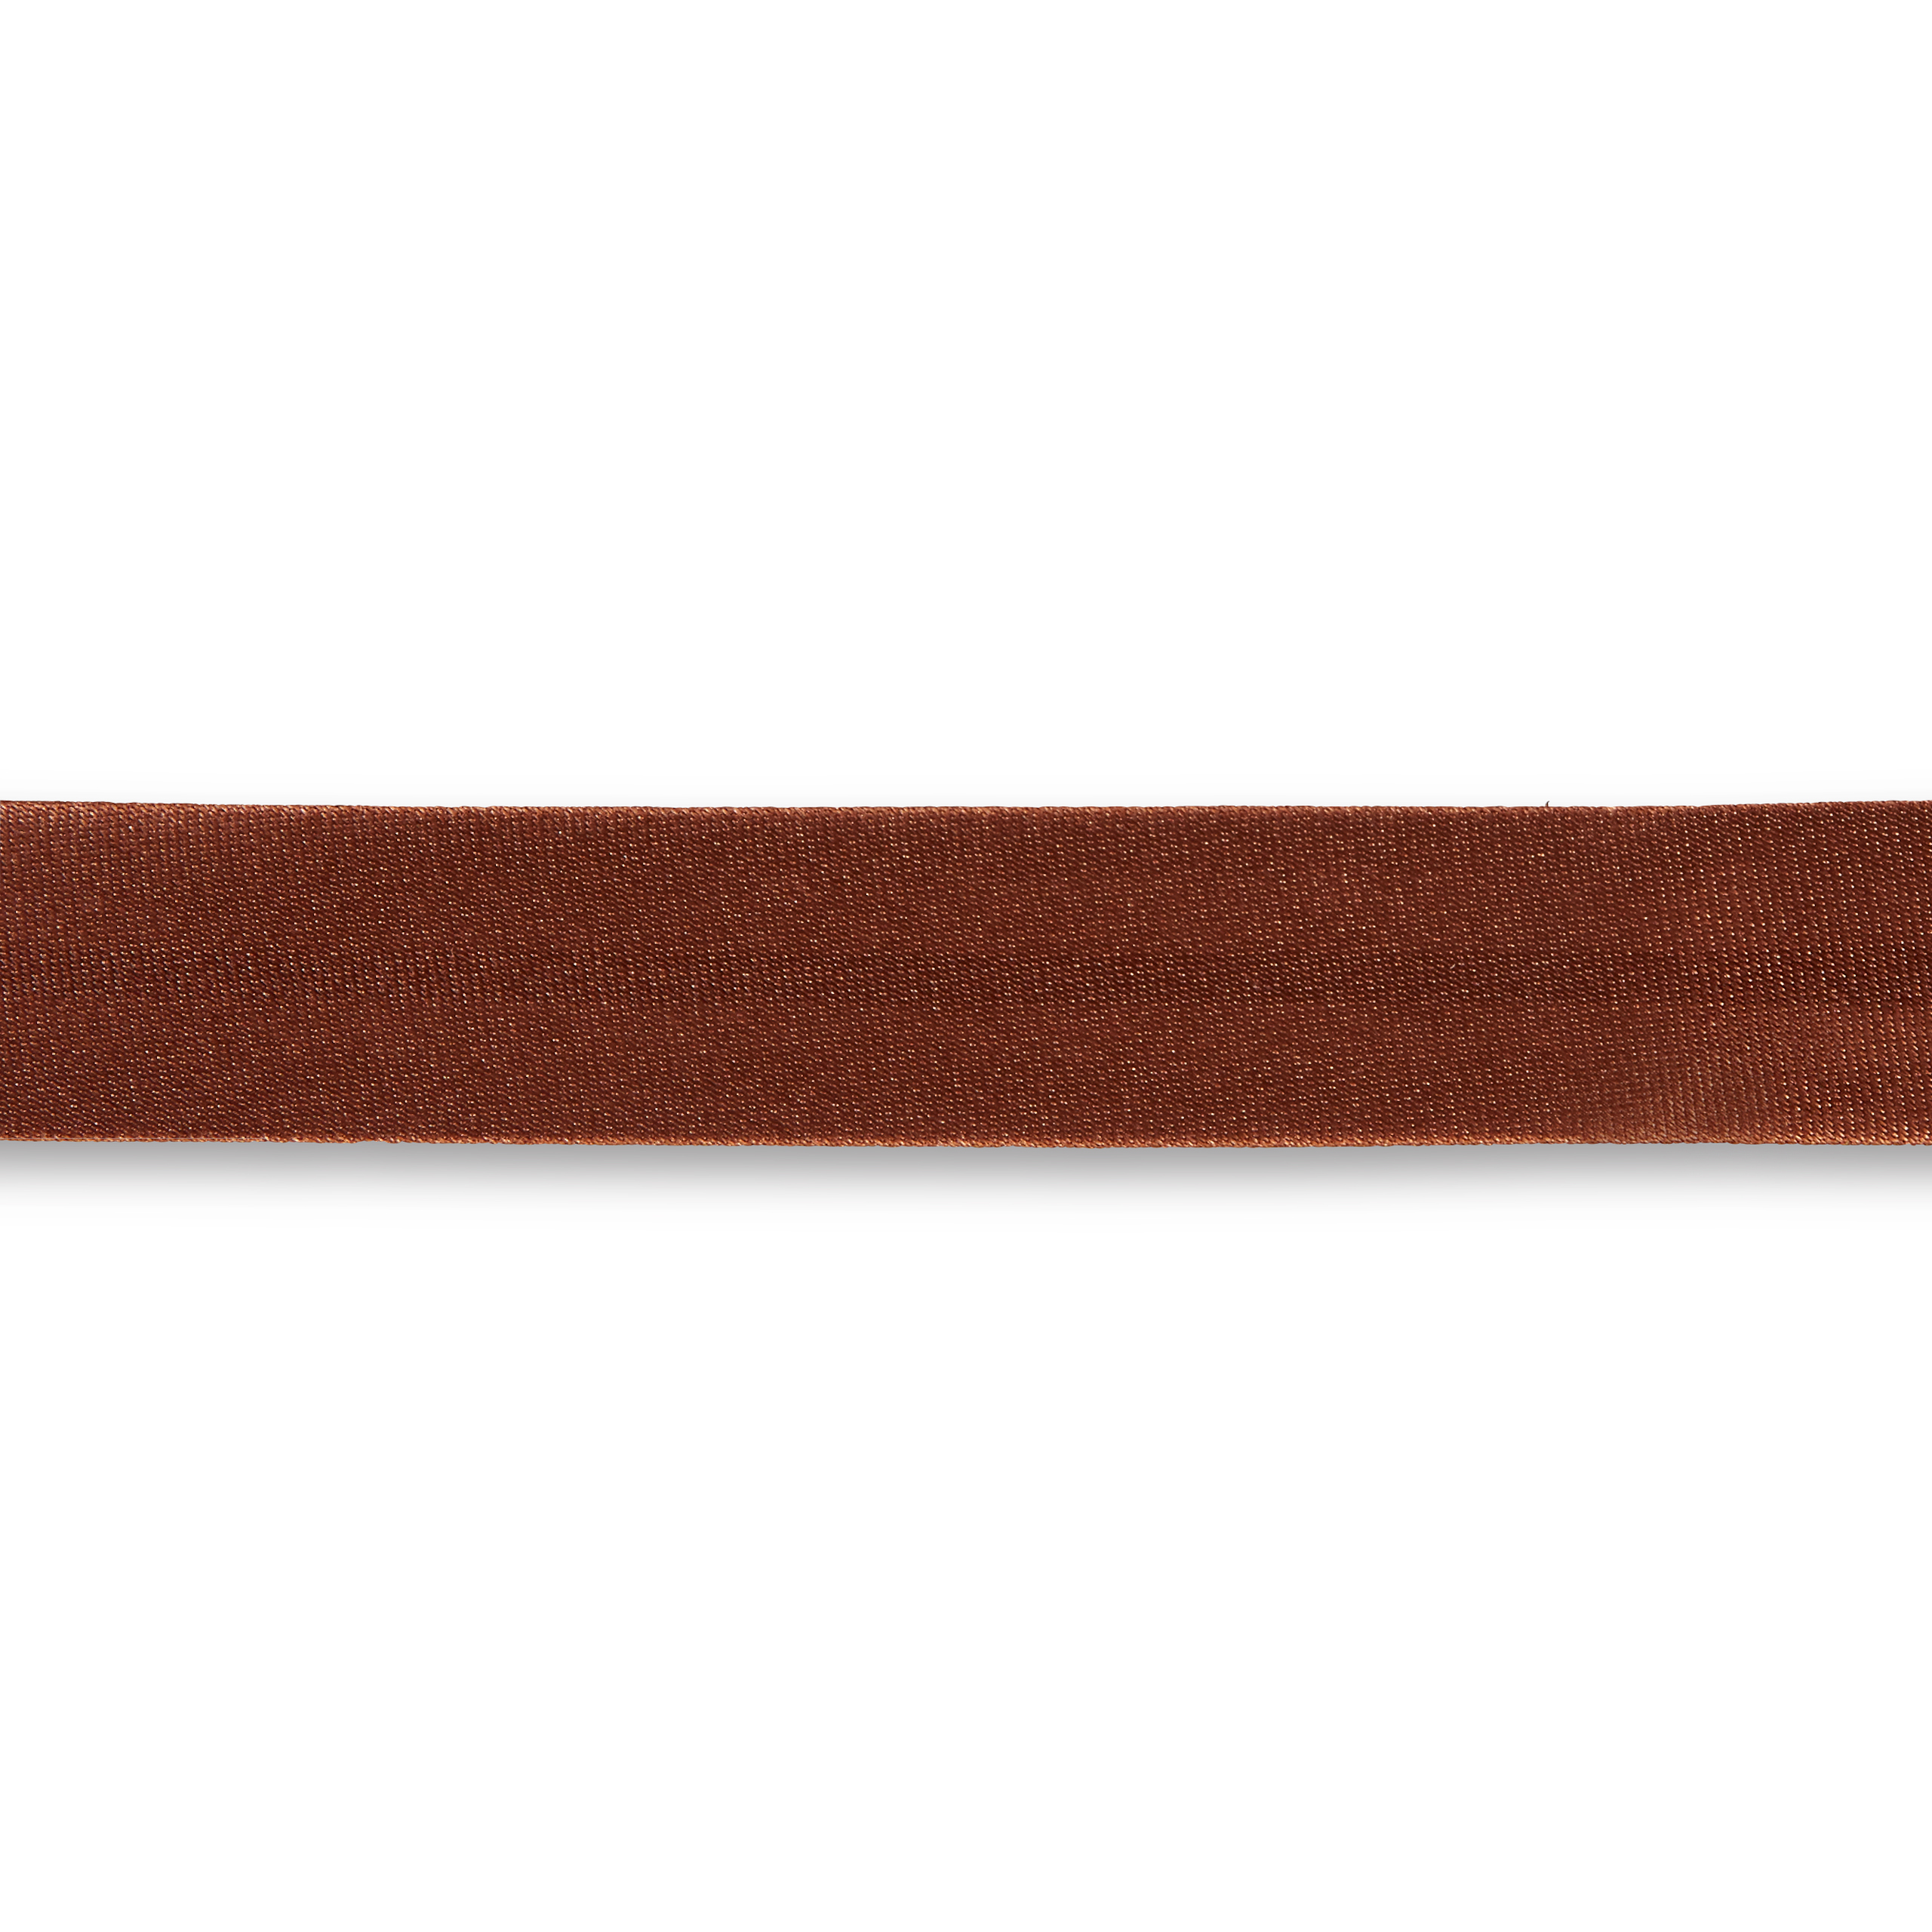 Schrägband Duchesse 40/20 mm mittelbraun, Meterware, Einfassband, Satin-Schrägband 